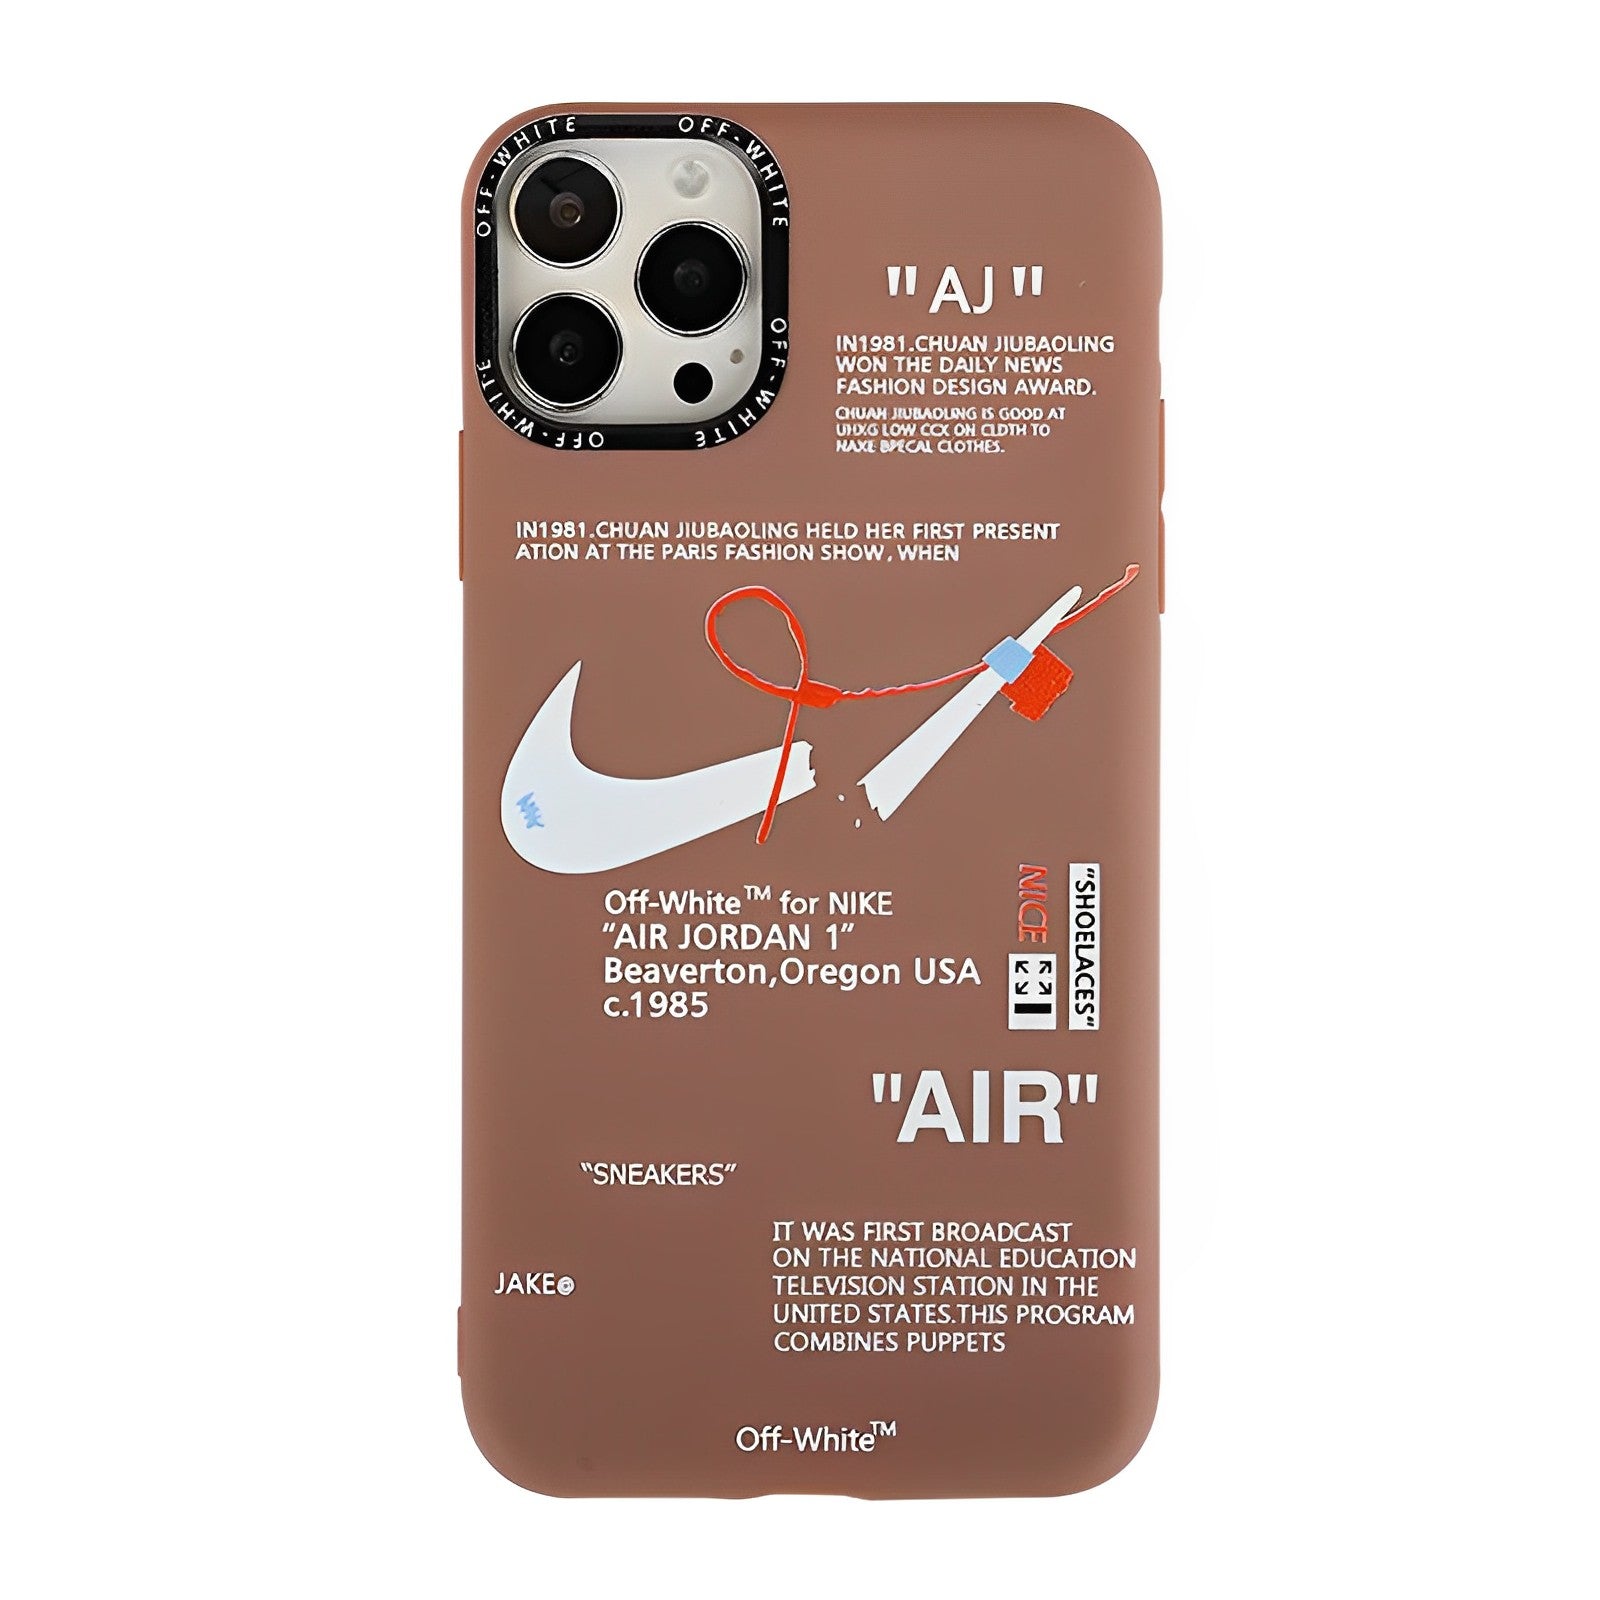 AIR JORDAN 1 ×NK Tag iPhone Case